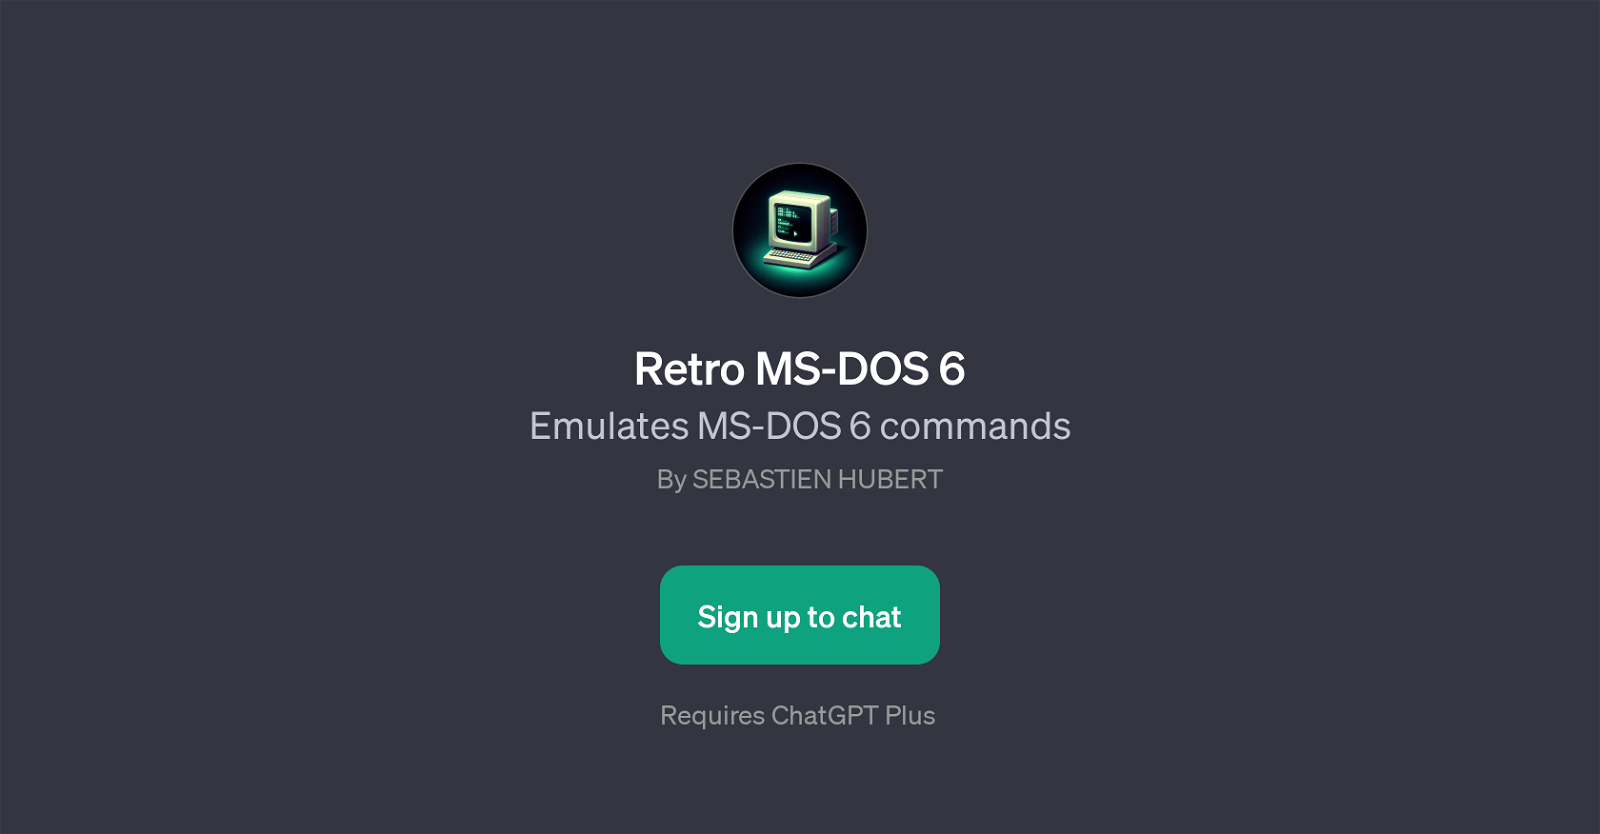 Retro MS-DOS 6 GPT website